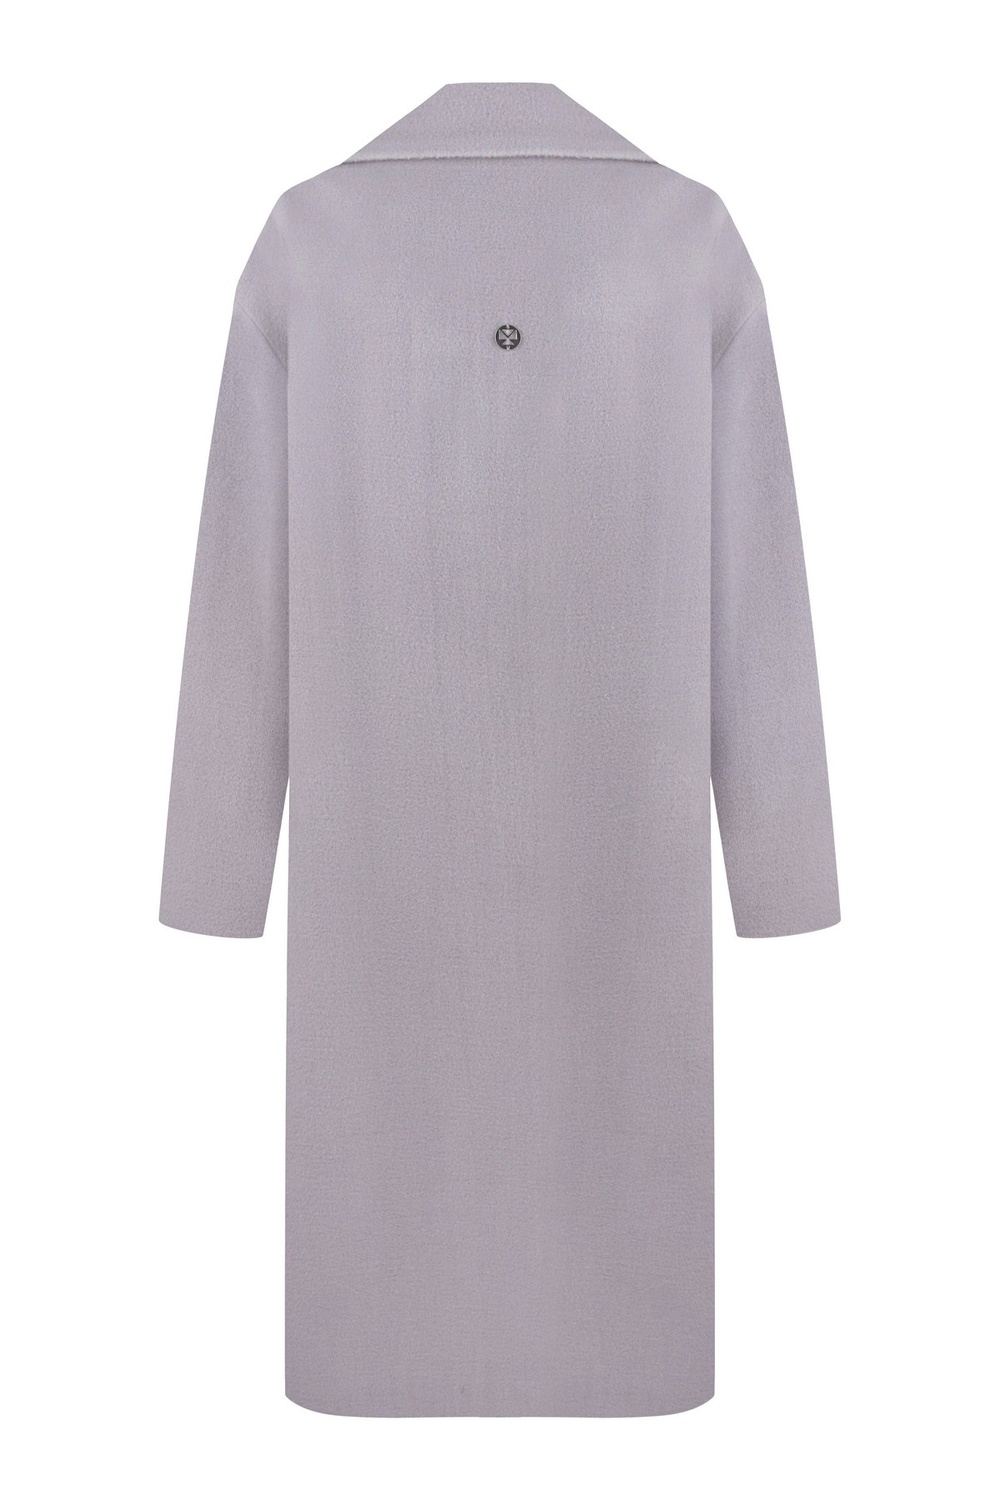 Пальто из бархатистой шерсти с небольшим ворсом цвет светлая лаванда. 093_lavender фото